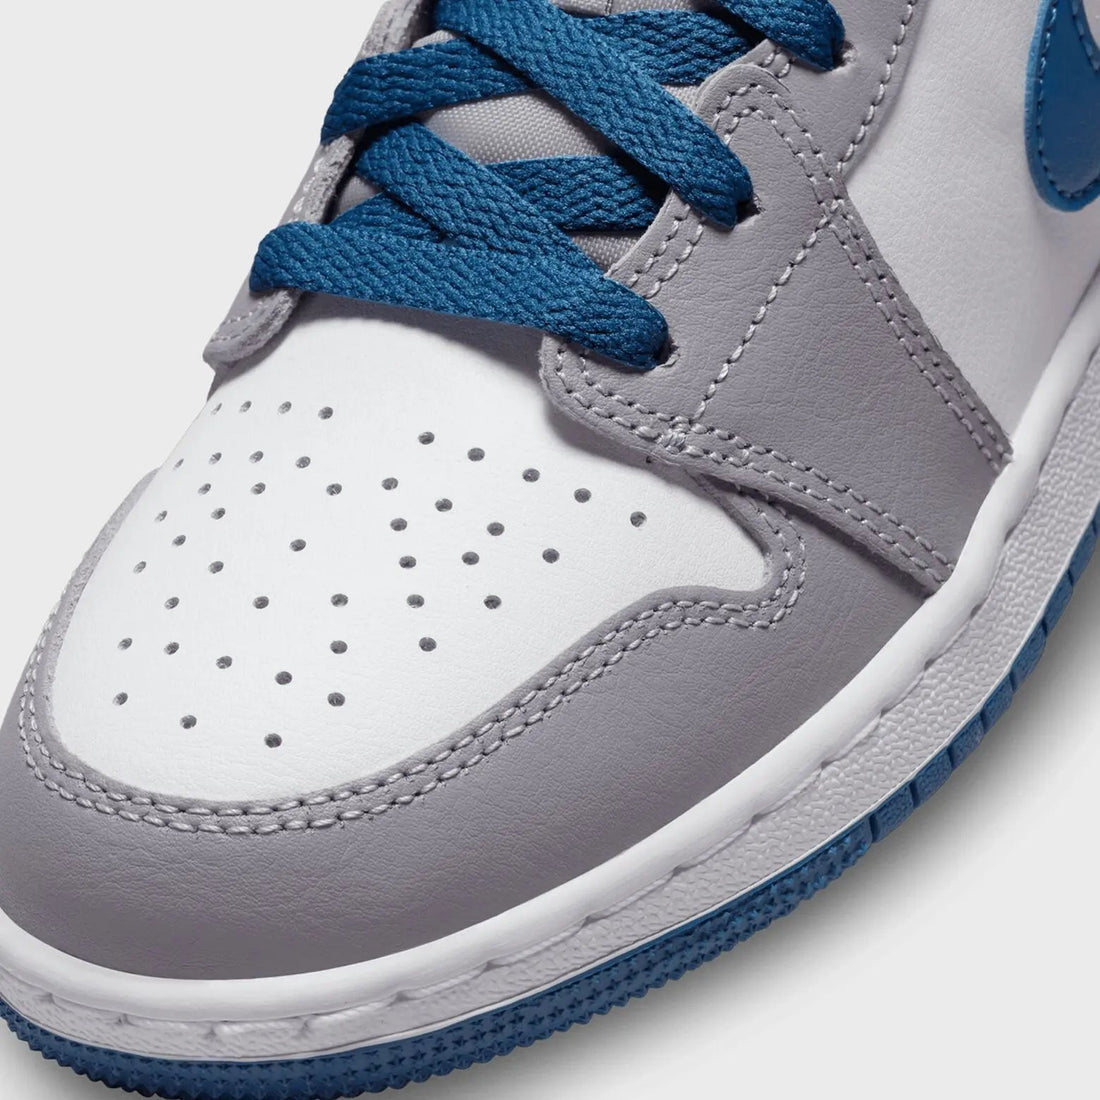 Jordan 1 Mid True Blue Cement (GS) sneakers kikokickz 